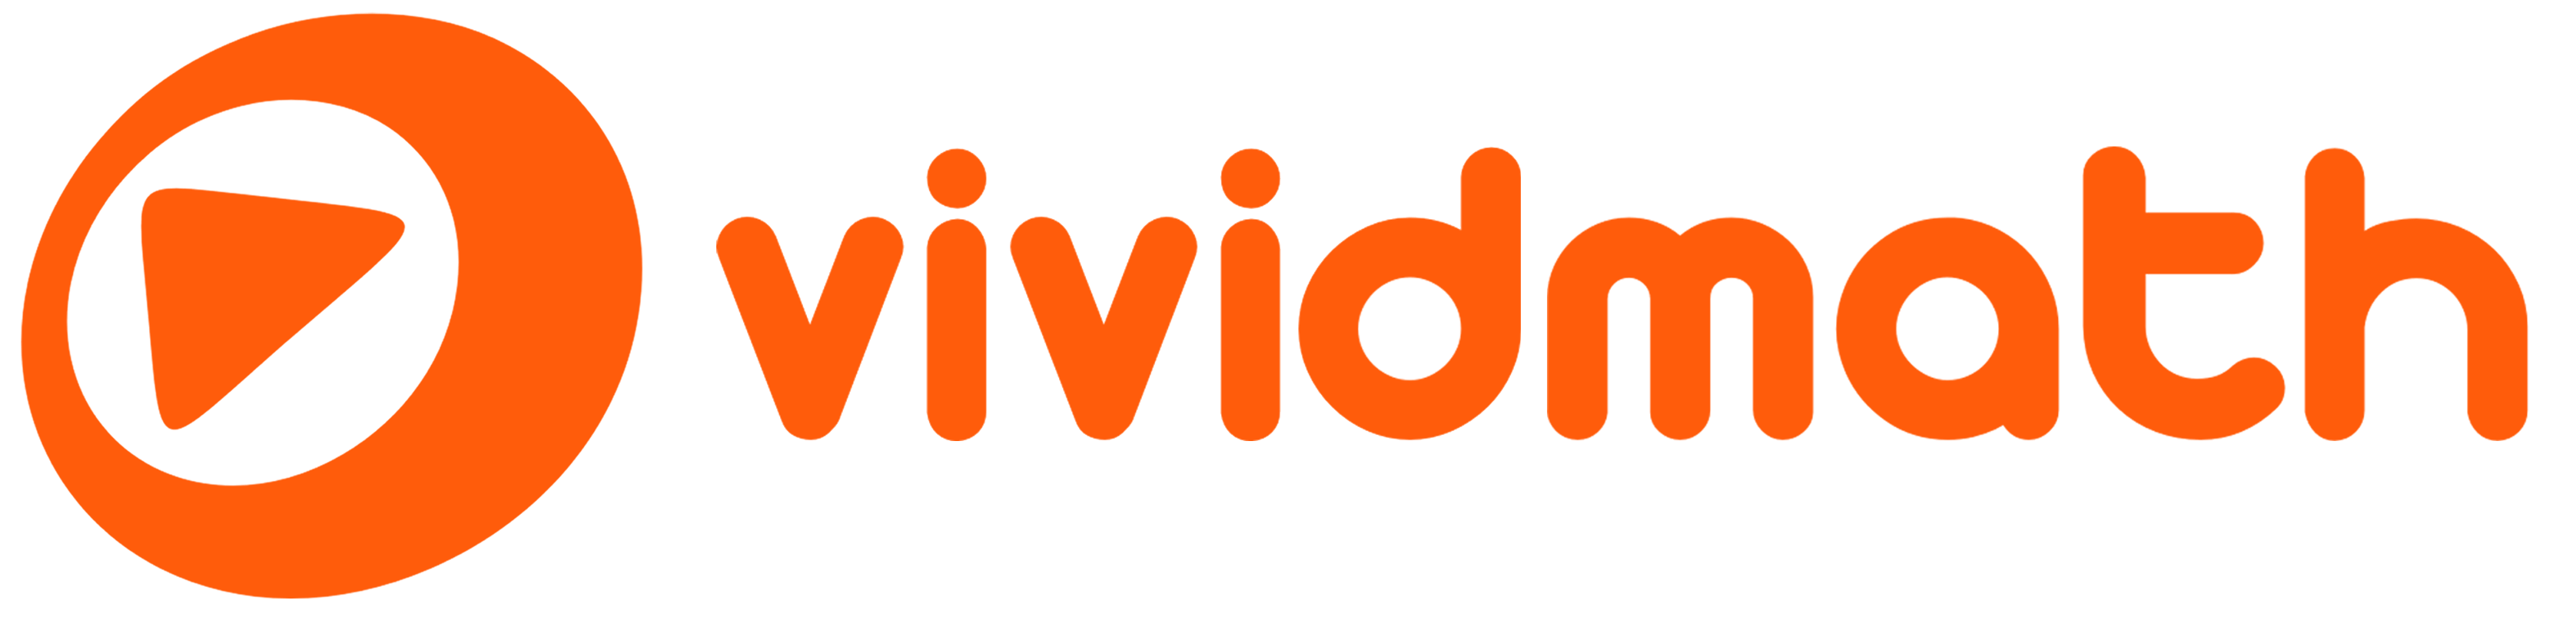 vividmath main logo